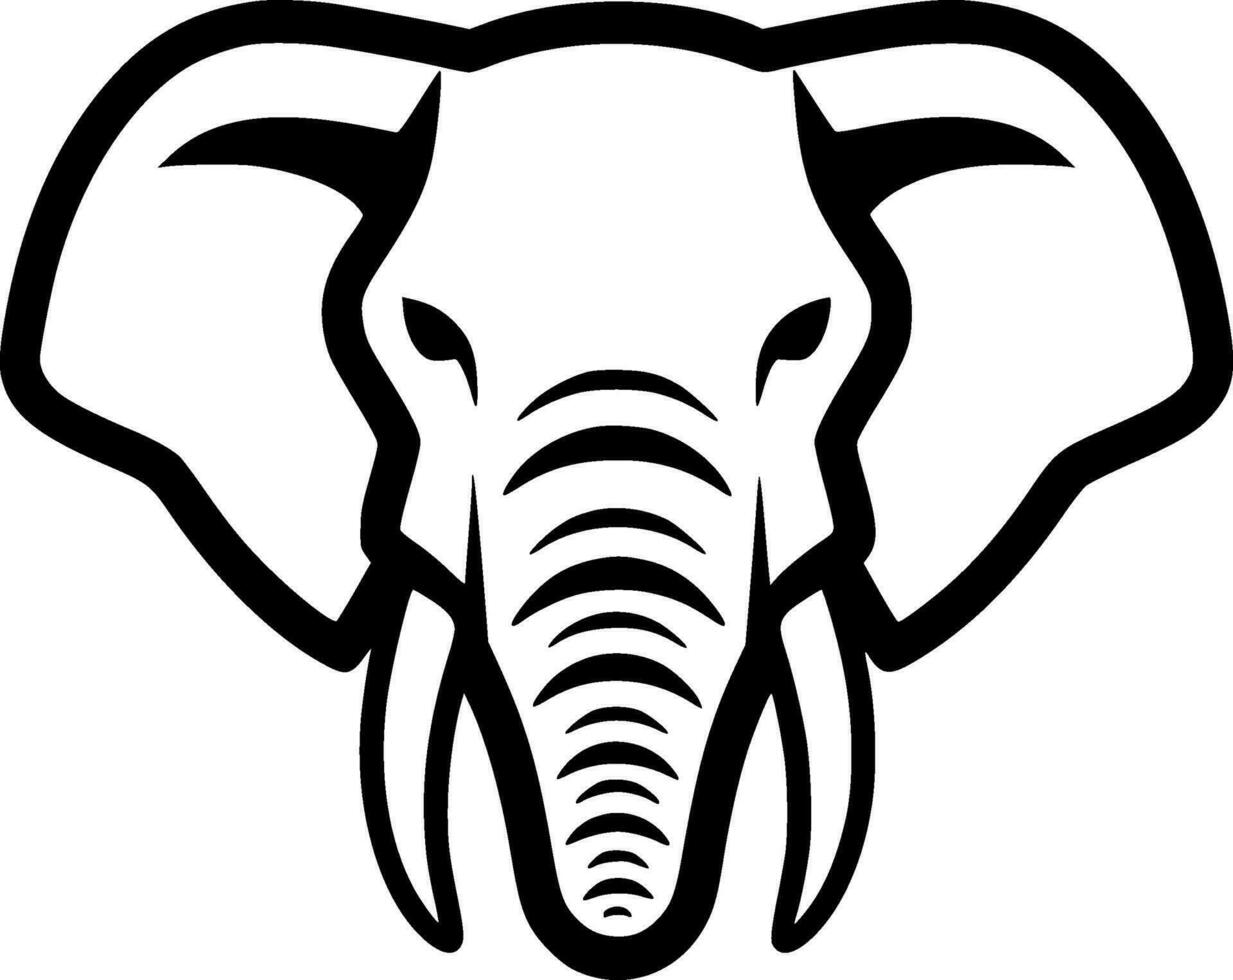 elefant - minimalistisk och platt logotyp - vektor illustration